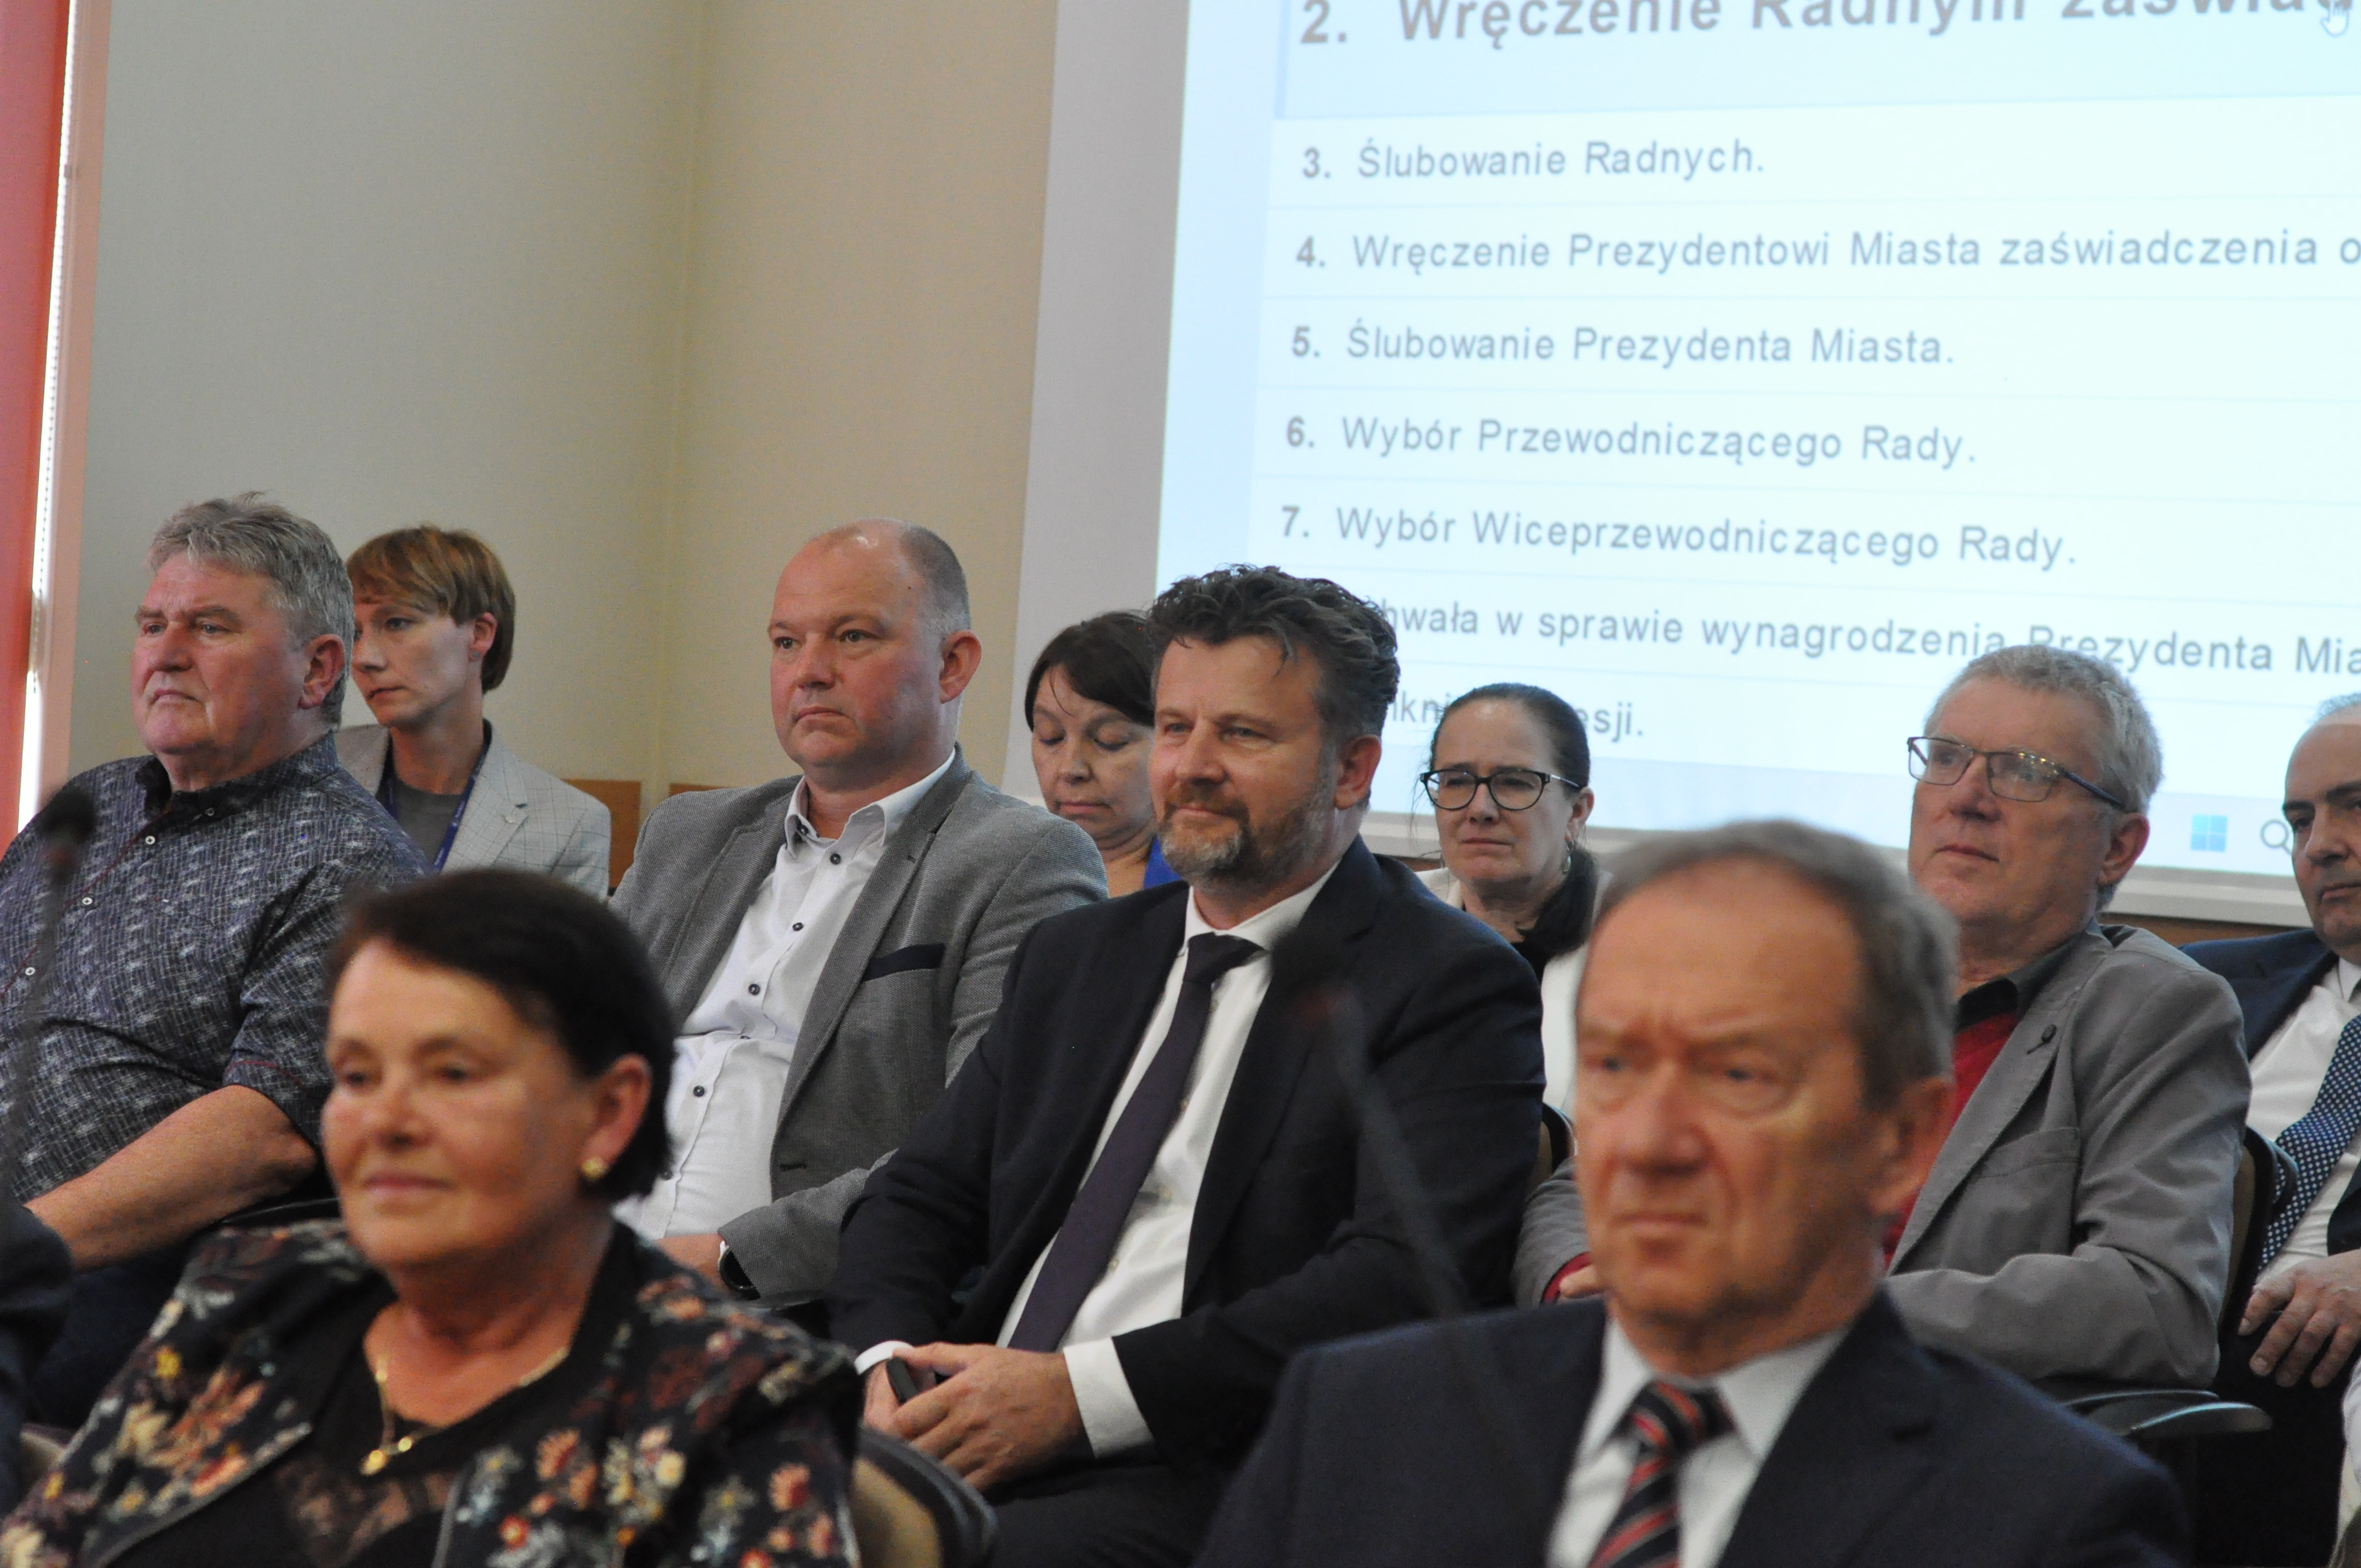 Na pierwszą sesję przyszli byli szefowie spółek miejskich - Krzysztof Kubek z wodociagów, Władysław Konopka ze składowiska odpadów i Stanisław Mucha z PK